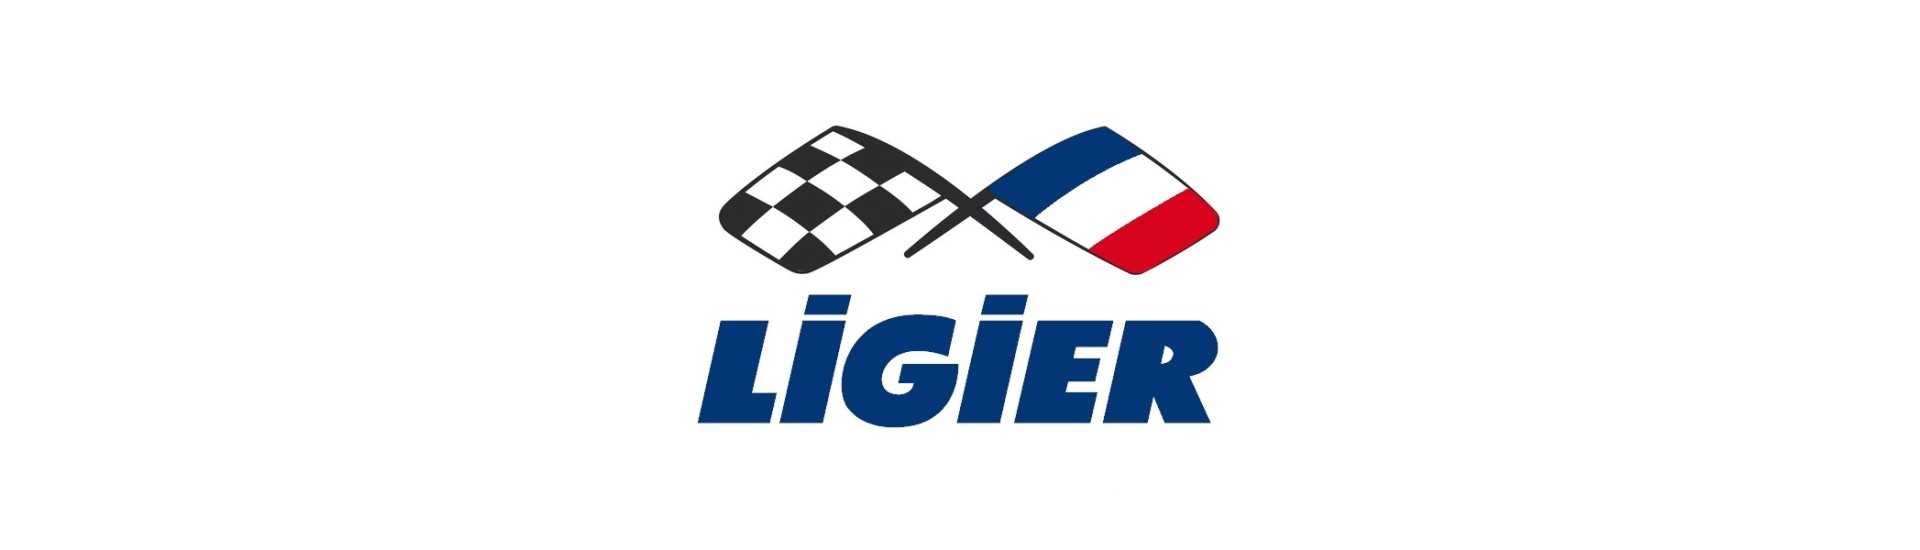 Phara și tuning la cel mai bun preț pentru mașină fără permis Ligier